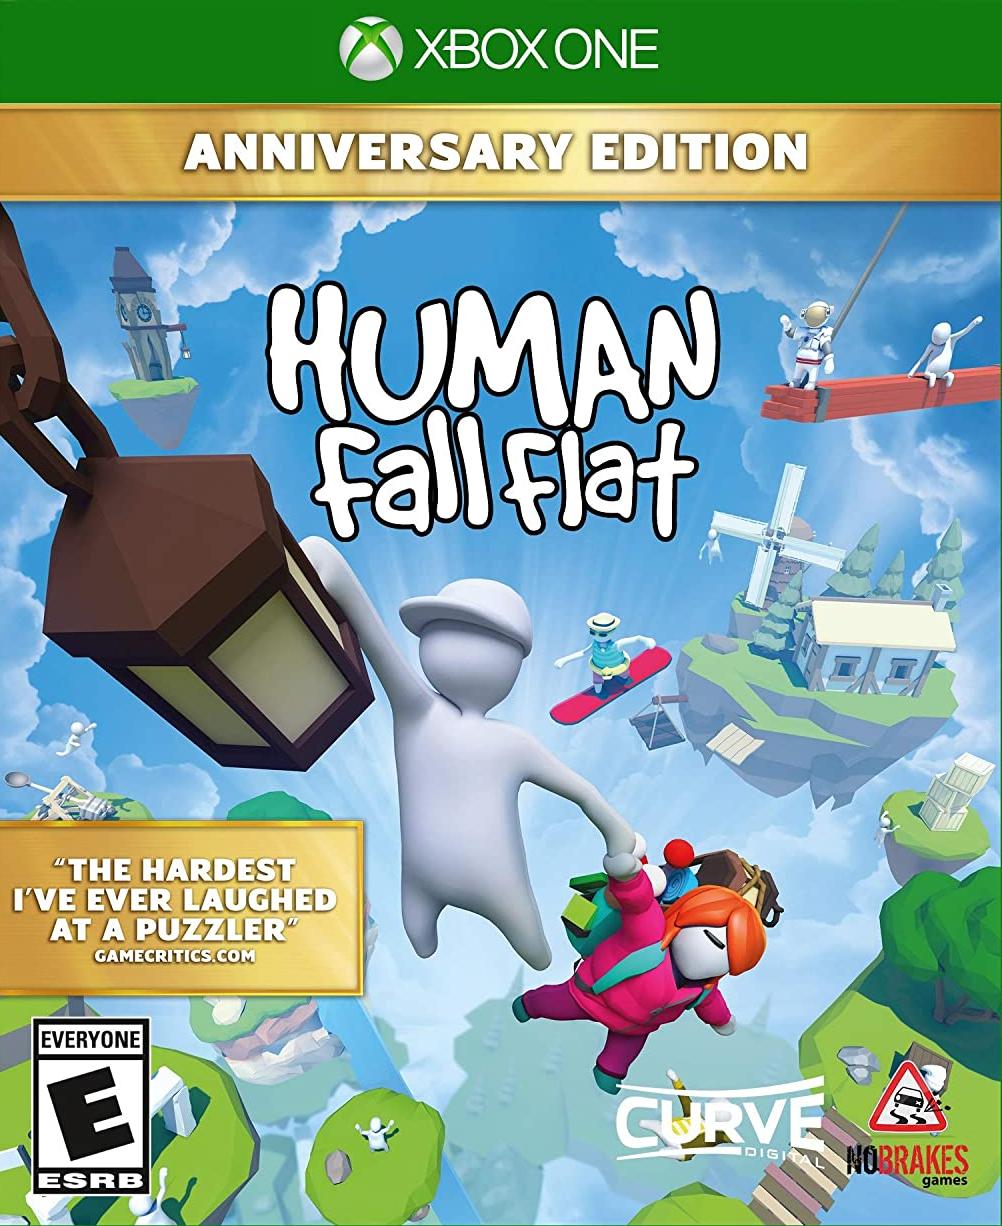 Human: Fall Flat Anniversary Edition Русская Версия (Xbox One)